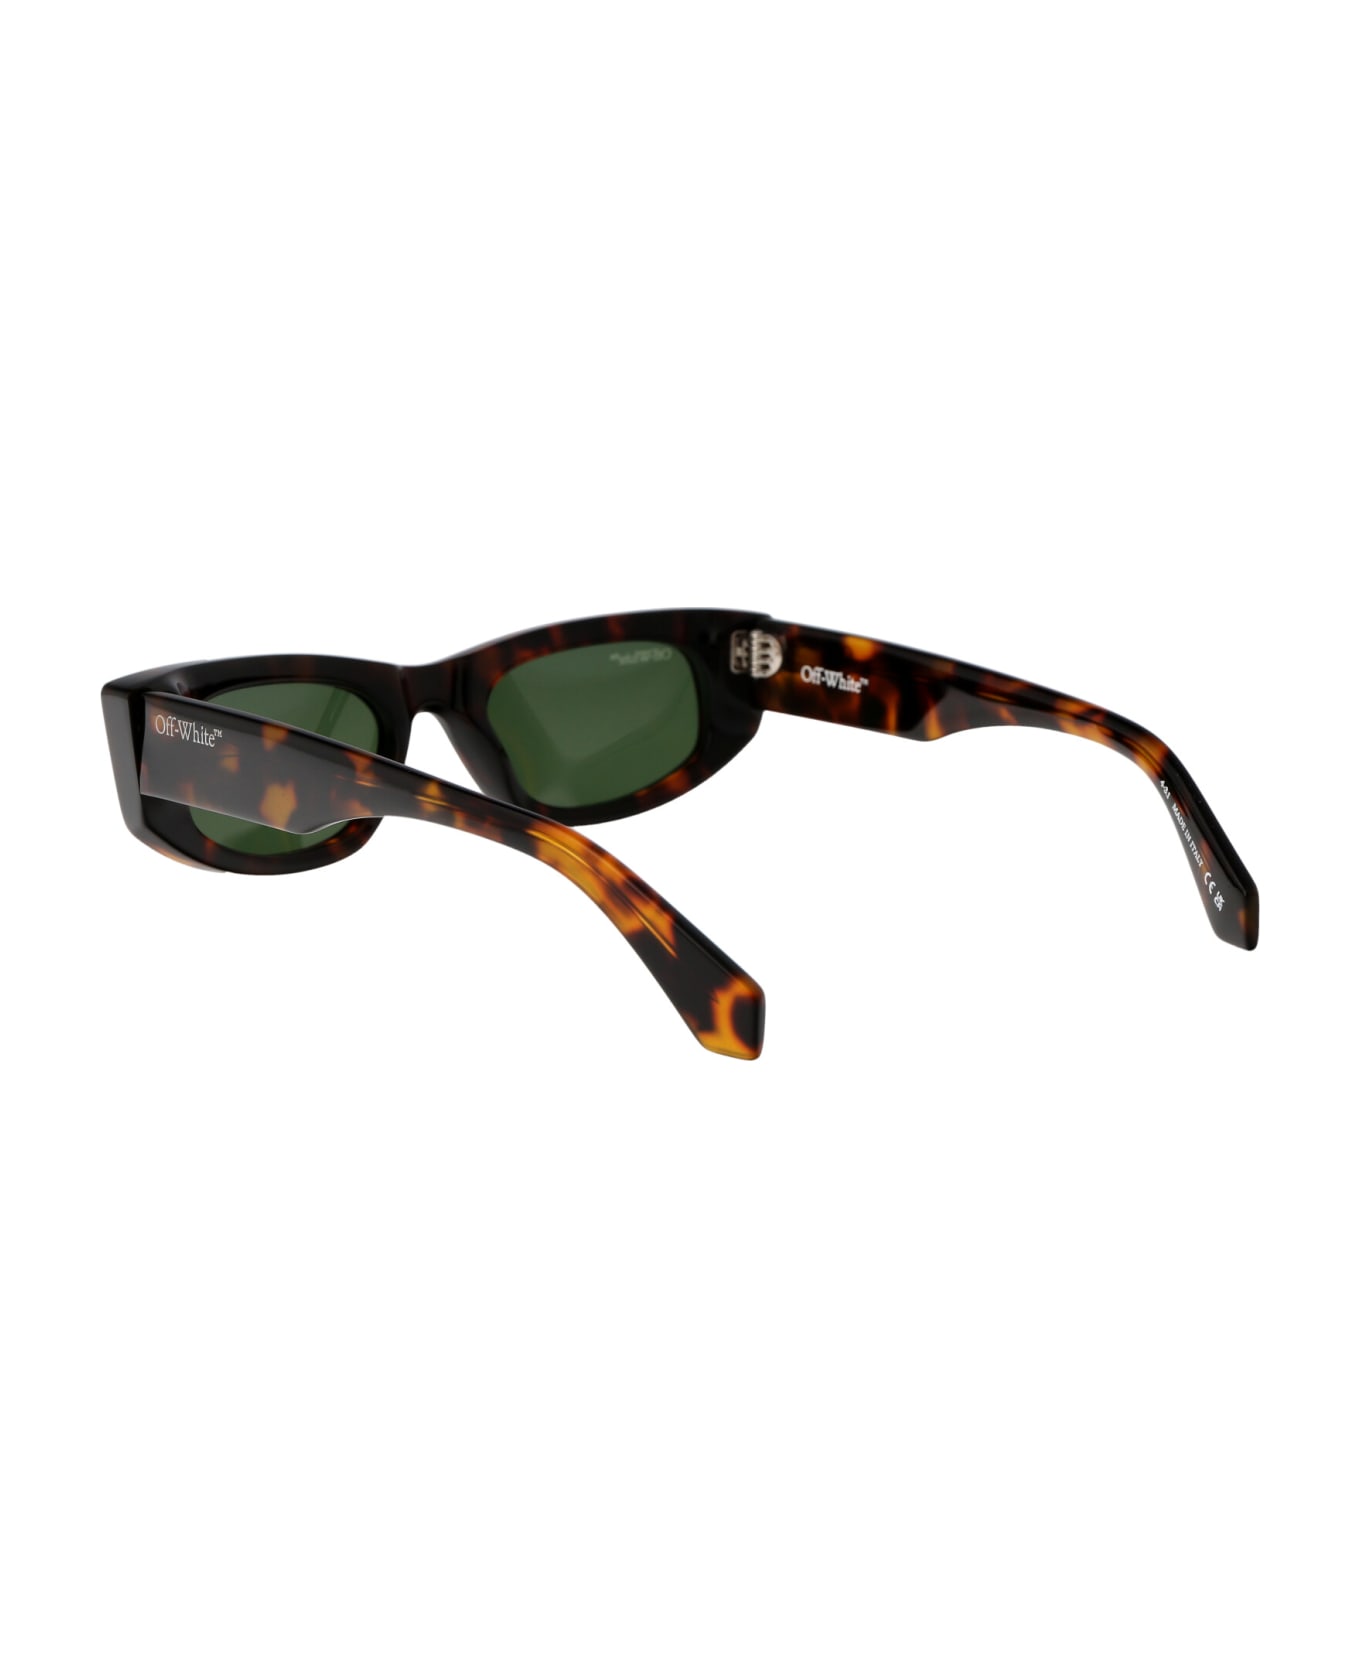 Off-White Matera Sunglasses - 6055 HAVANA